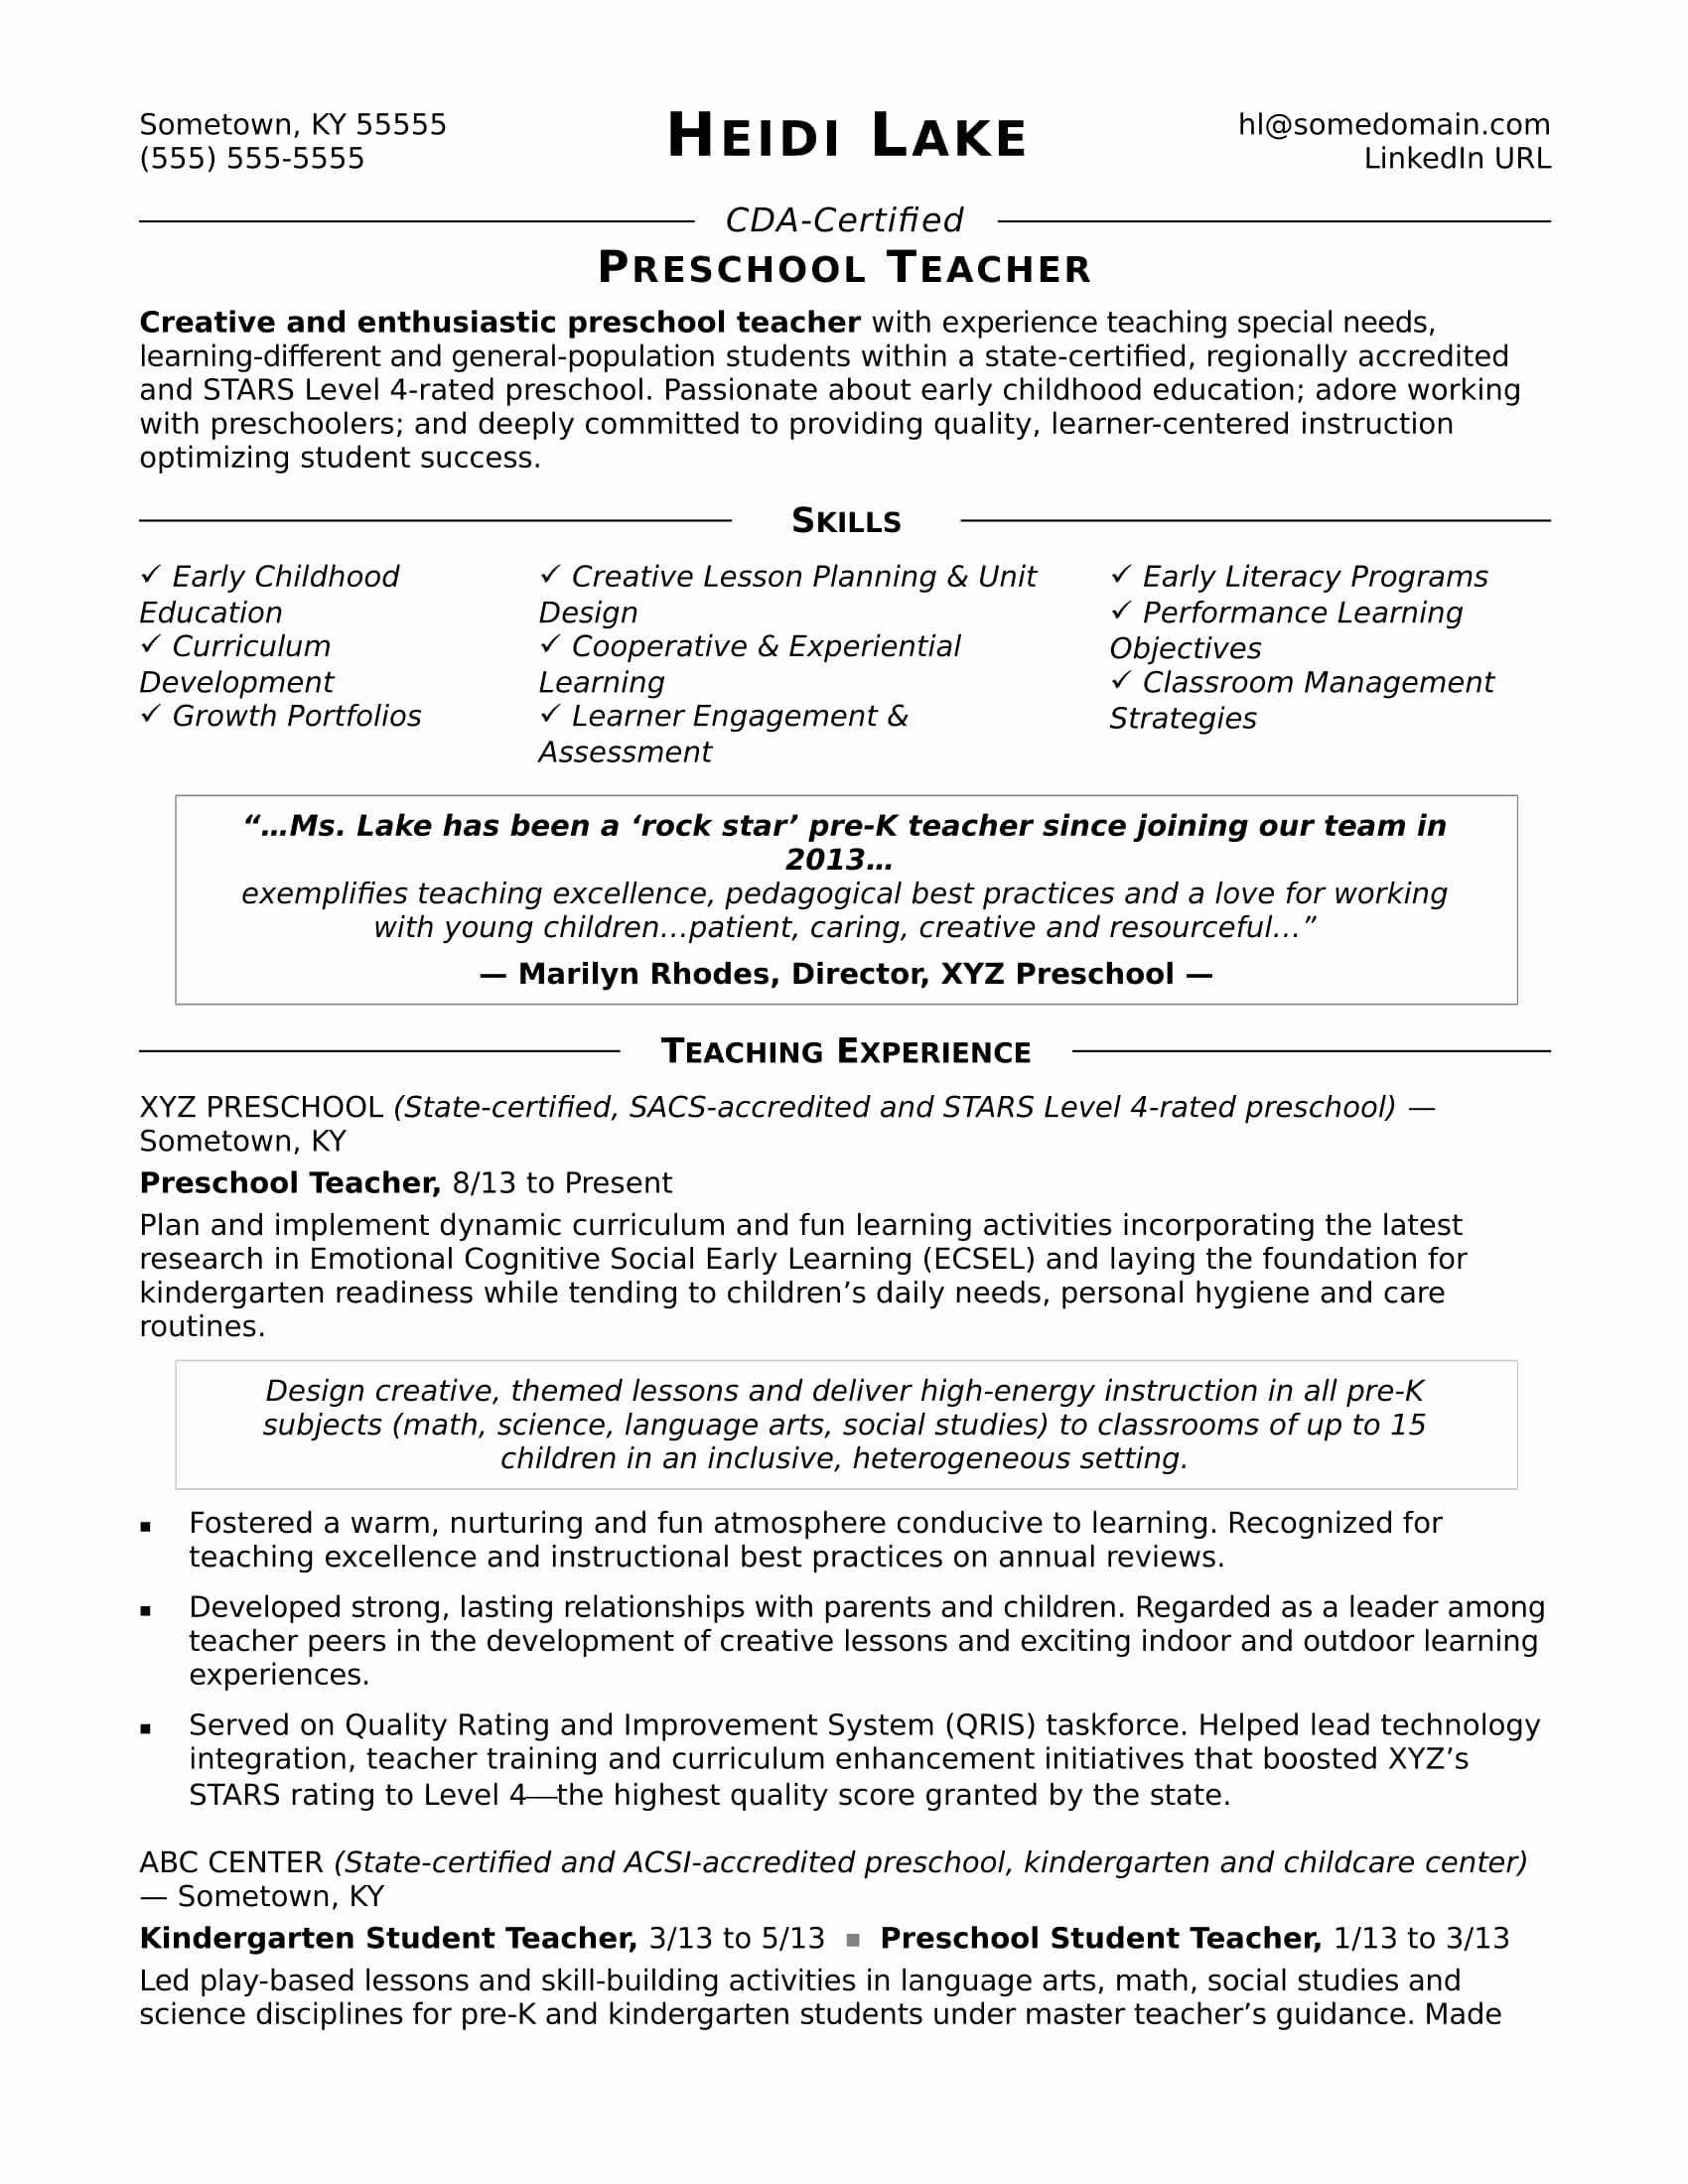 Resume Template for Teachers Luxury Preschool Teacher Resume Sample